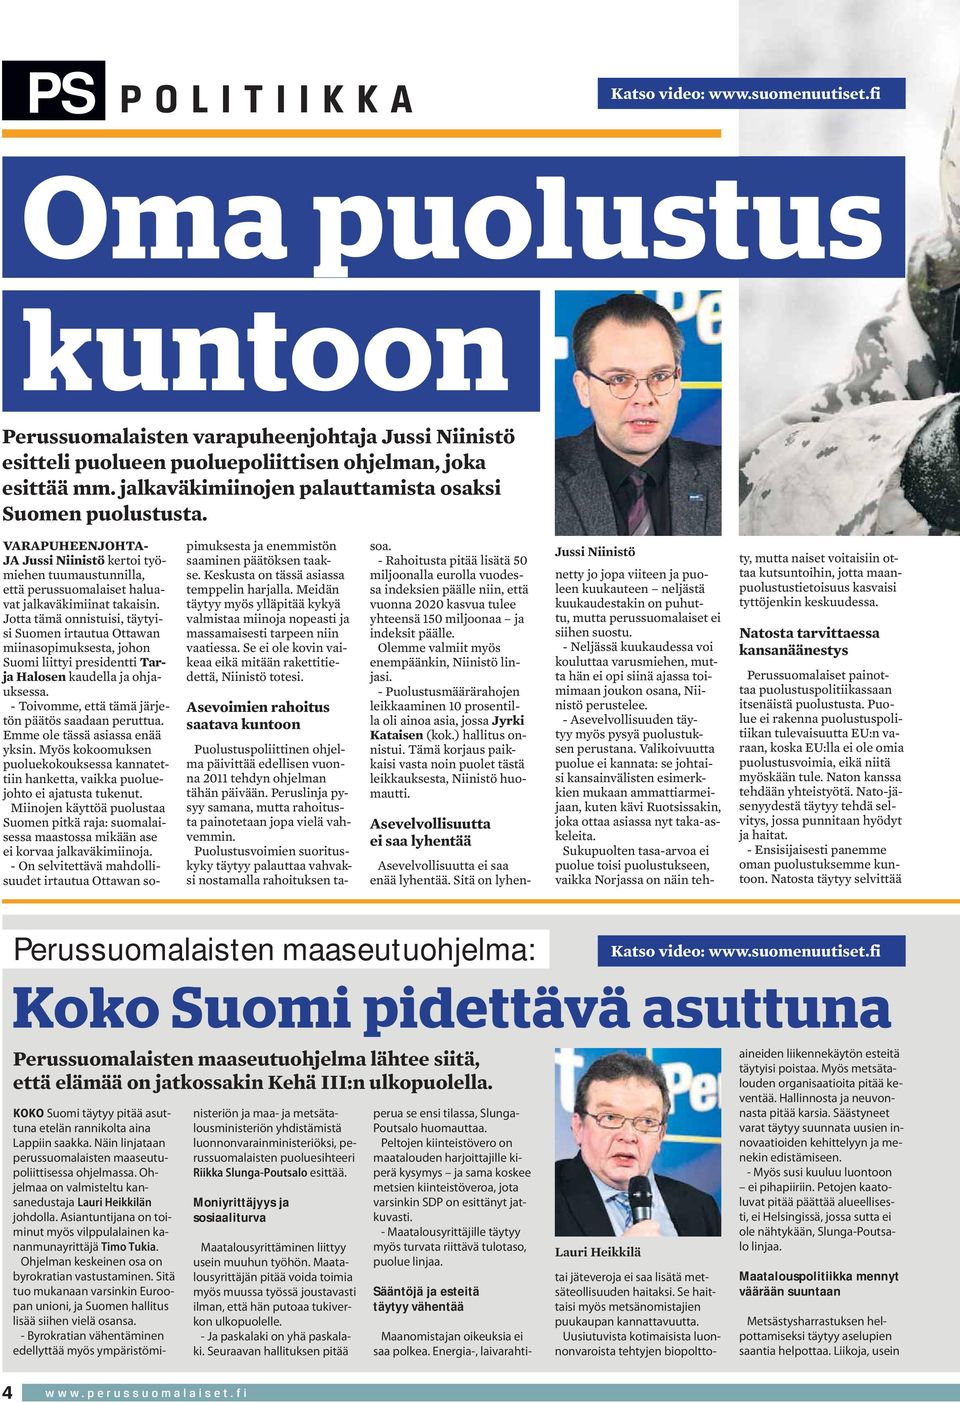 Jotta tämä onnistuisi, täytyisi Suomen irtautua Ottawan miinasopimuksesta, johon Suomi liittyi presidentti Tarja Halosen kaudella ja ohjauksessa.